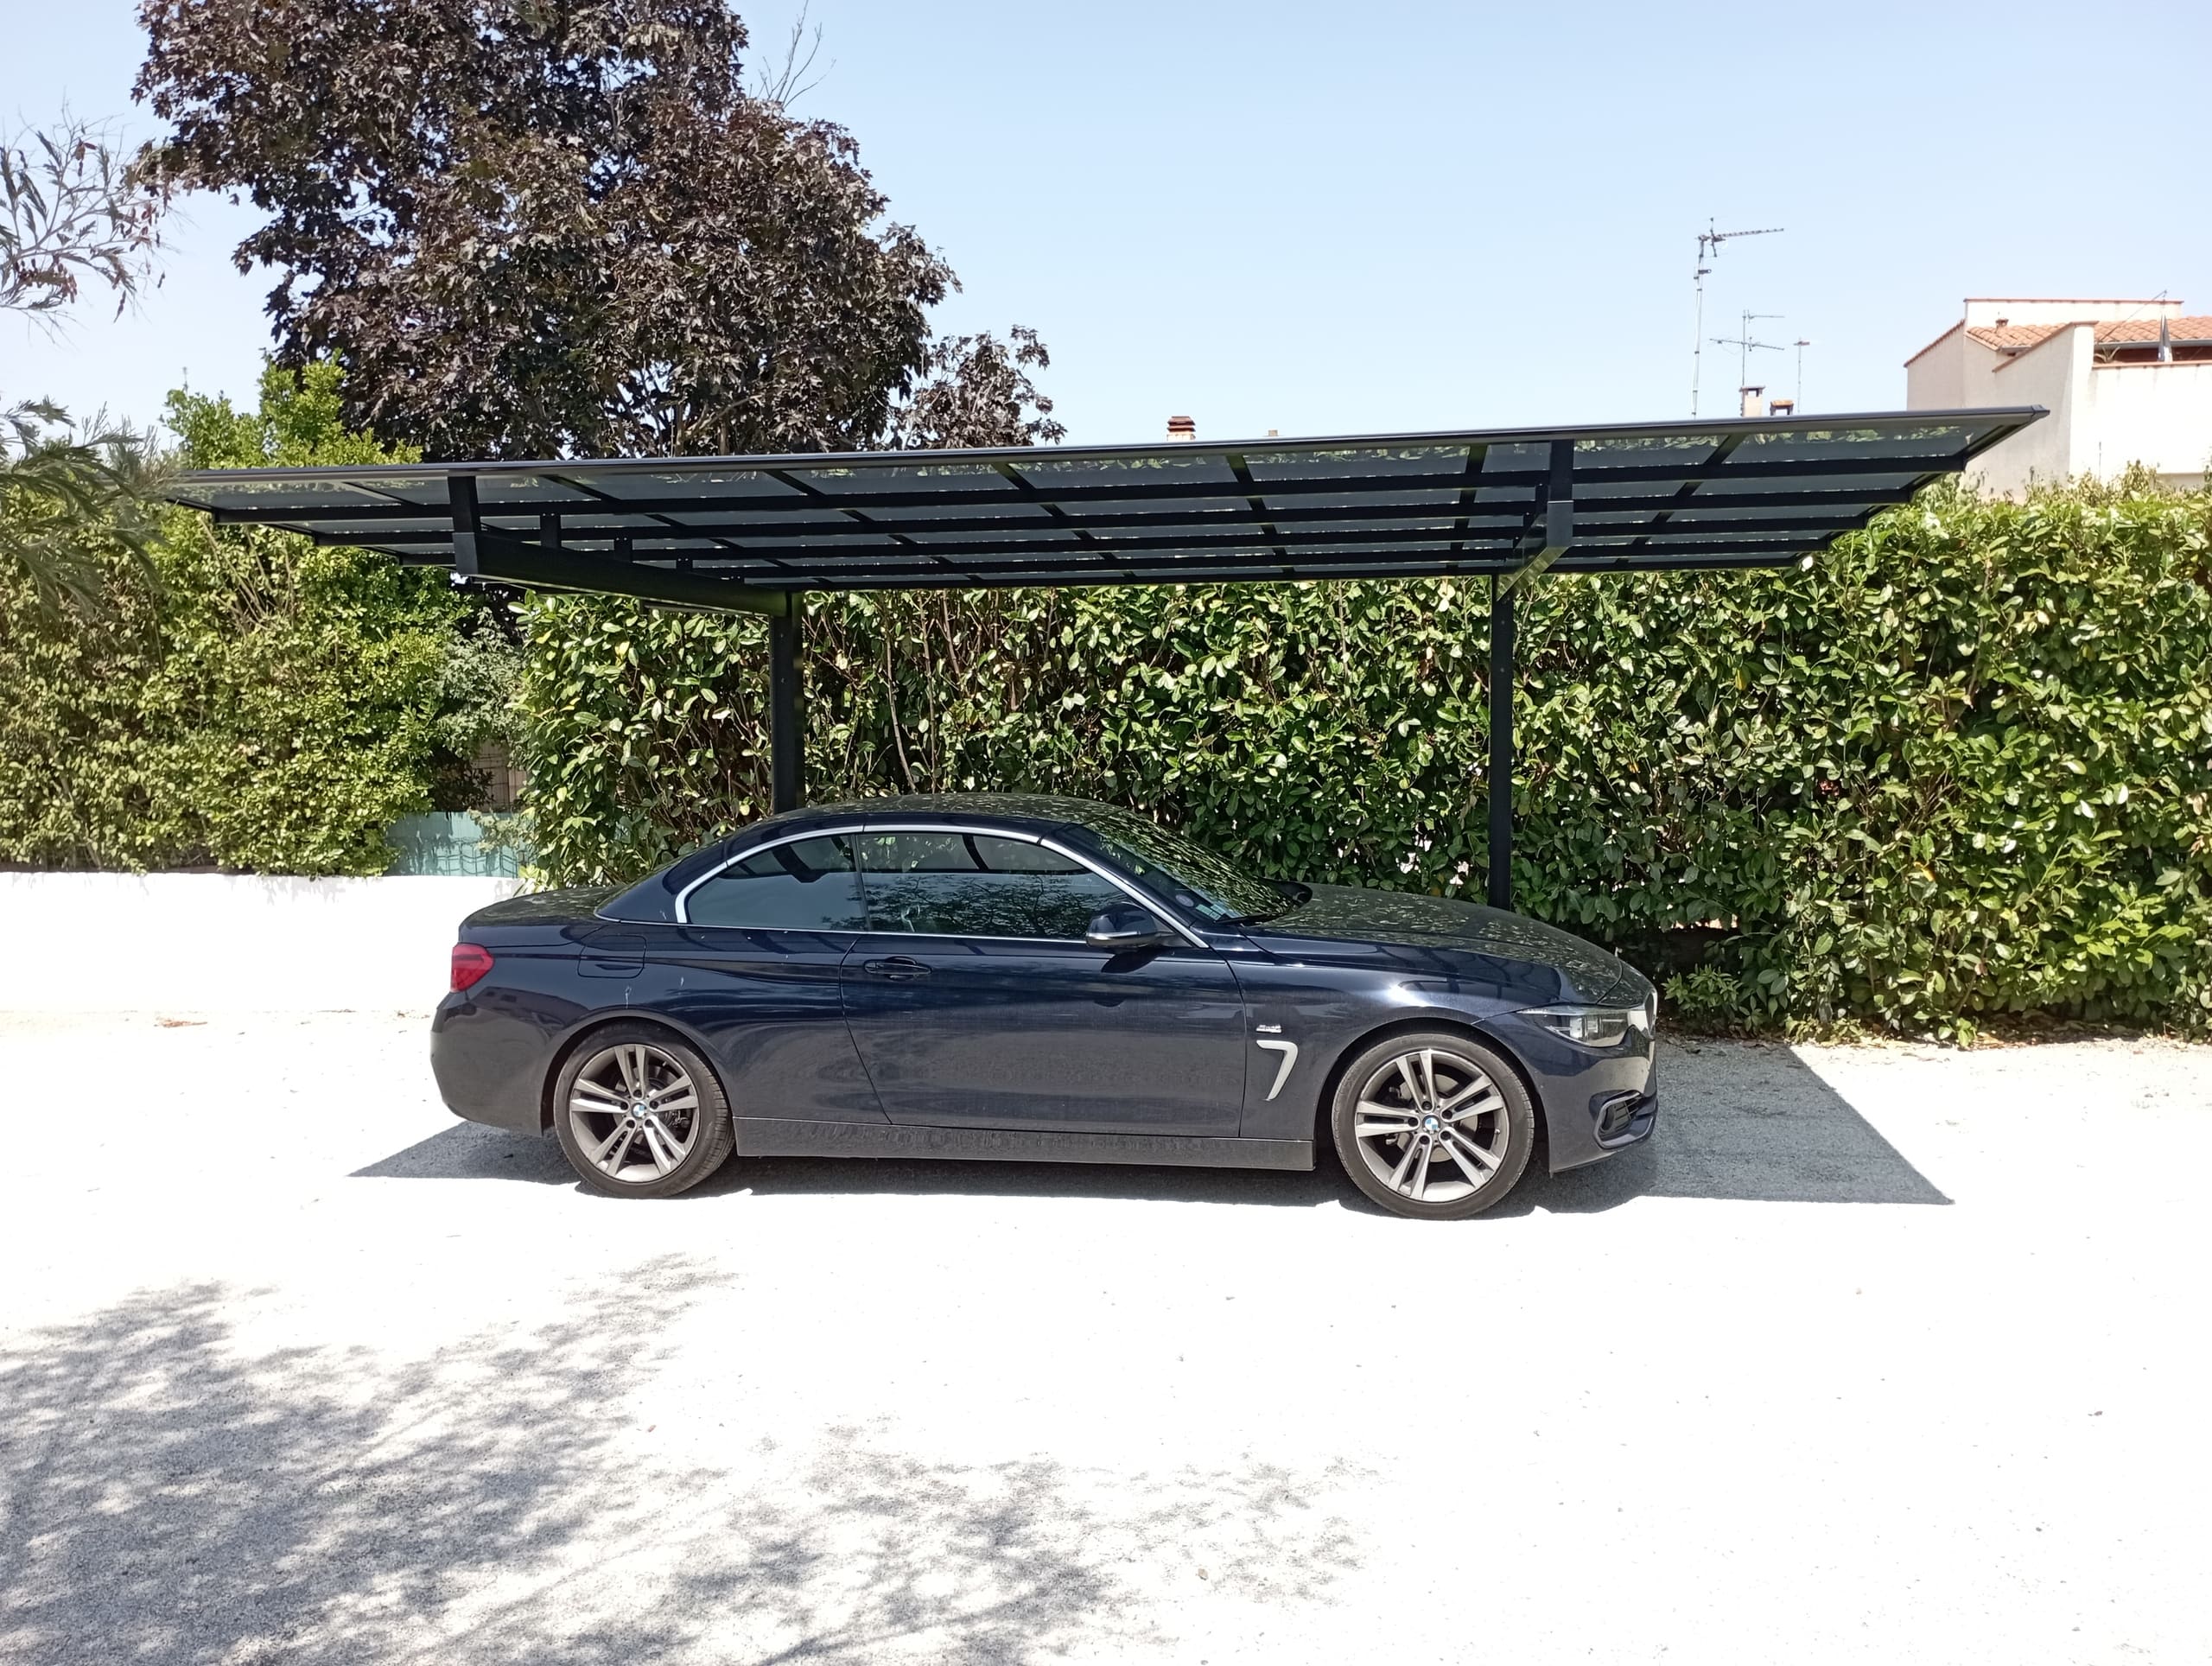 Un carport aluminium de qualité pour votre voiture à Angers